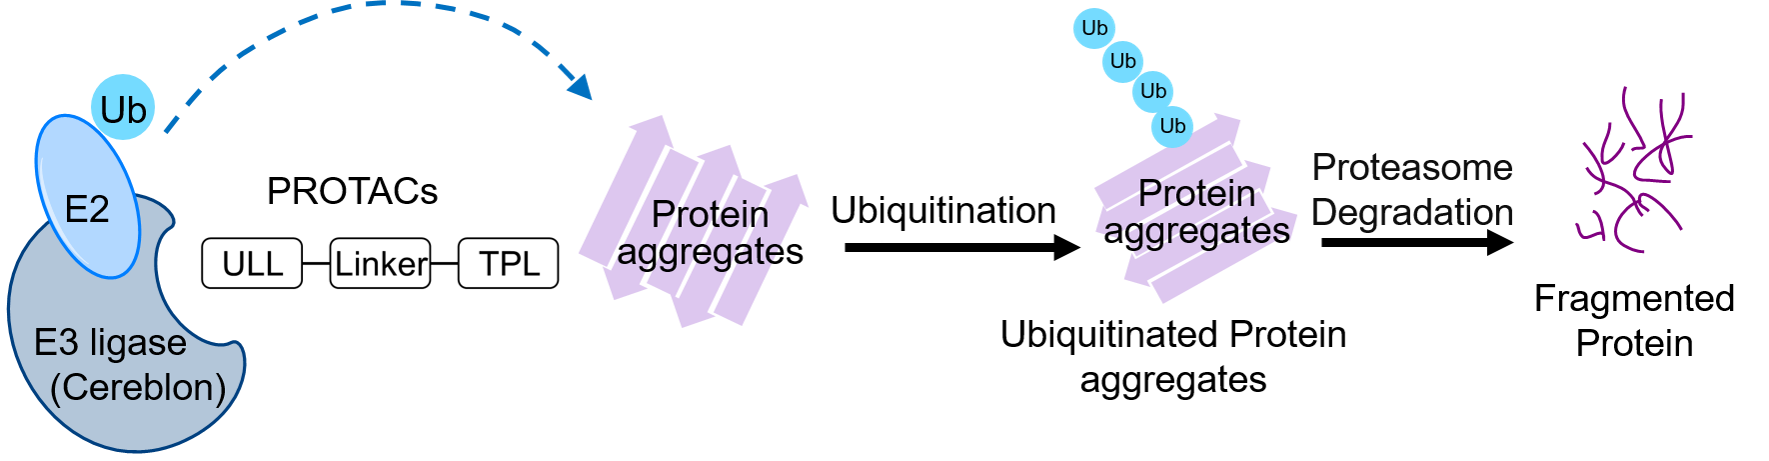 圖1.蛋白水解靶向嵌合體降解蛋白聚集體之作用機制：蛋白水解靶向嵌合體以一端結合E3連接酶，以另一端結合蛋白聚集體(例如導致肌萎縮性側索硬化症的TDP-43蛋白聚集體)，從而促進蛋白聚集體泛素化，且被蛋白酶體辨認並于以降解。